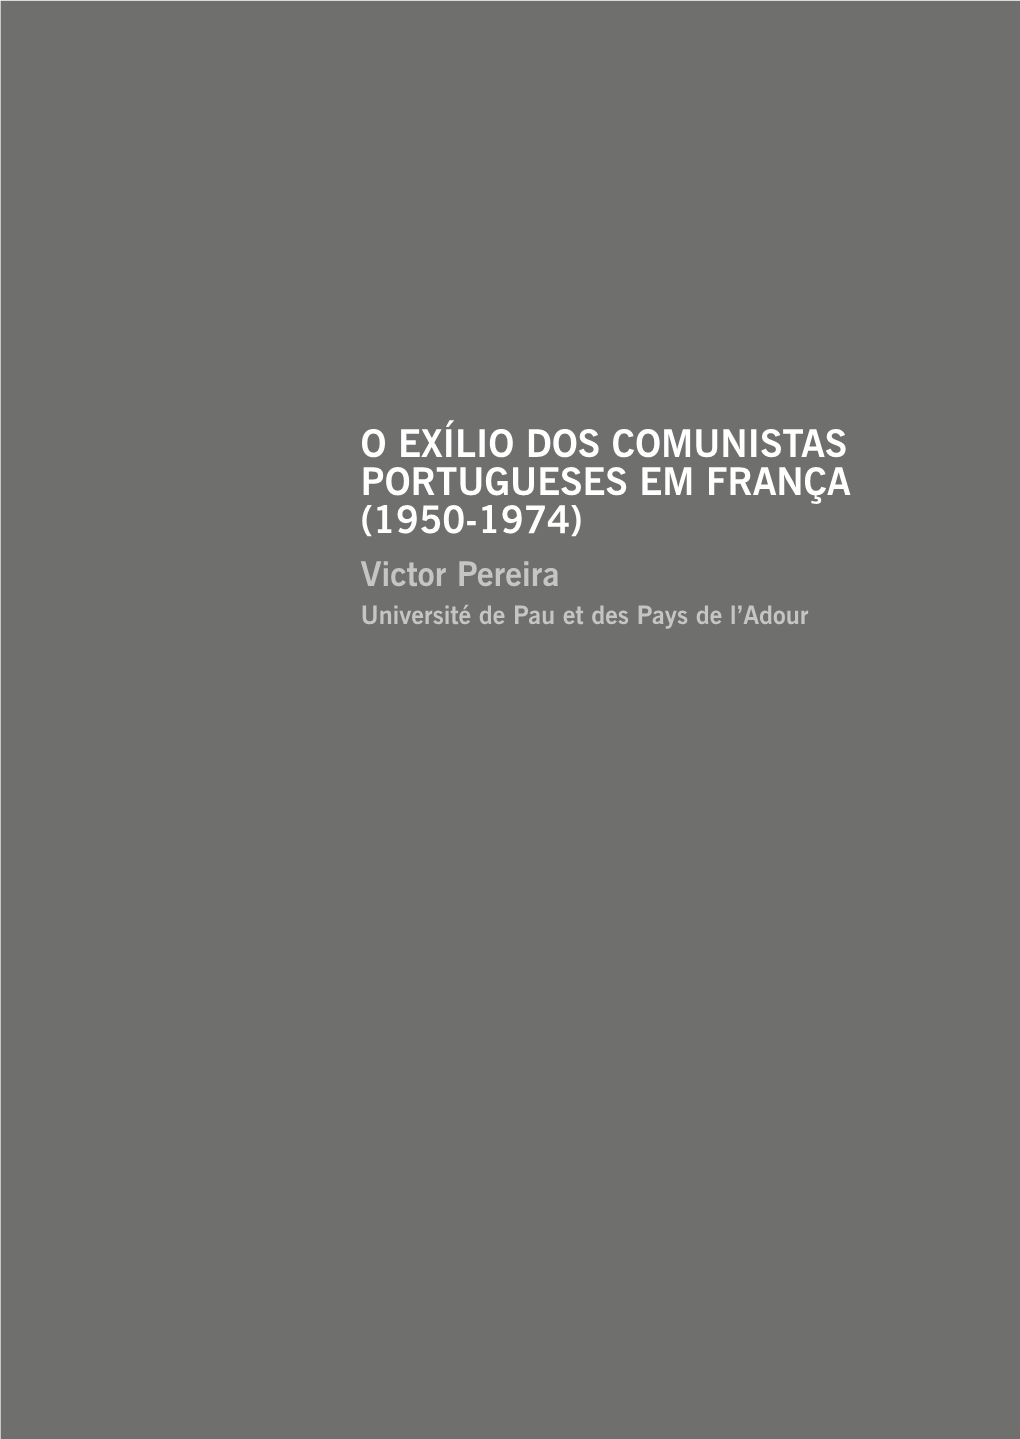 O EXÍLIO DOS COMUNISTAS PORTUGUESES EM FRANÇA (1950-1974) Victor Pereira Université De Pau Et Des Pays De L’Adour